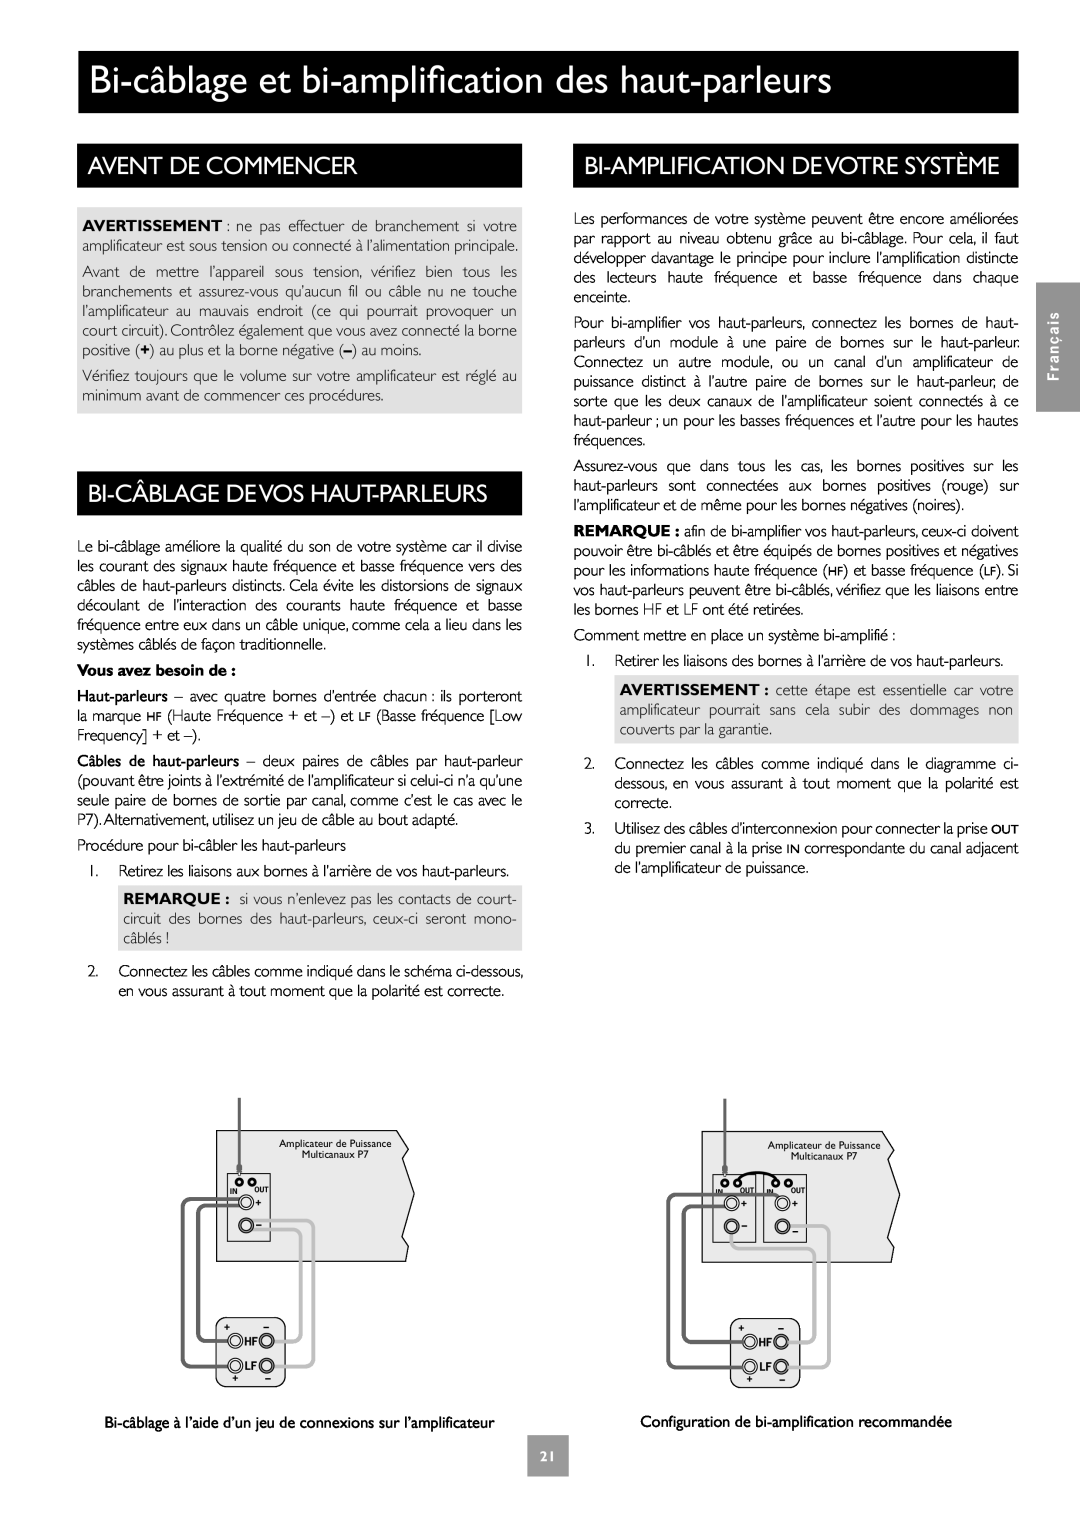 Arcam Multichannel Power Amplifier manual Bi-câblageet bi-amplificationdes haut-parleurs, Avent De Commencer 